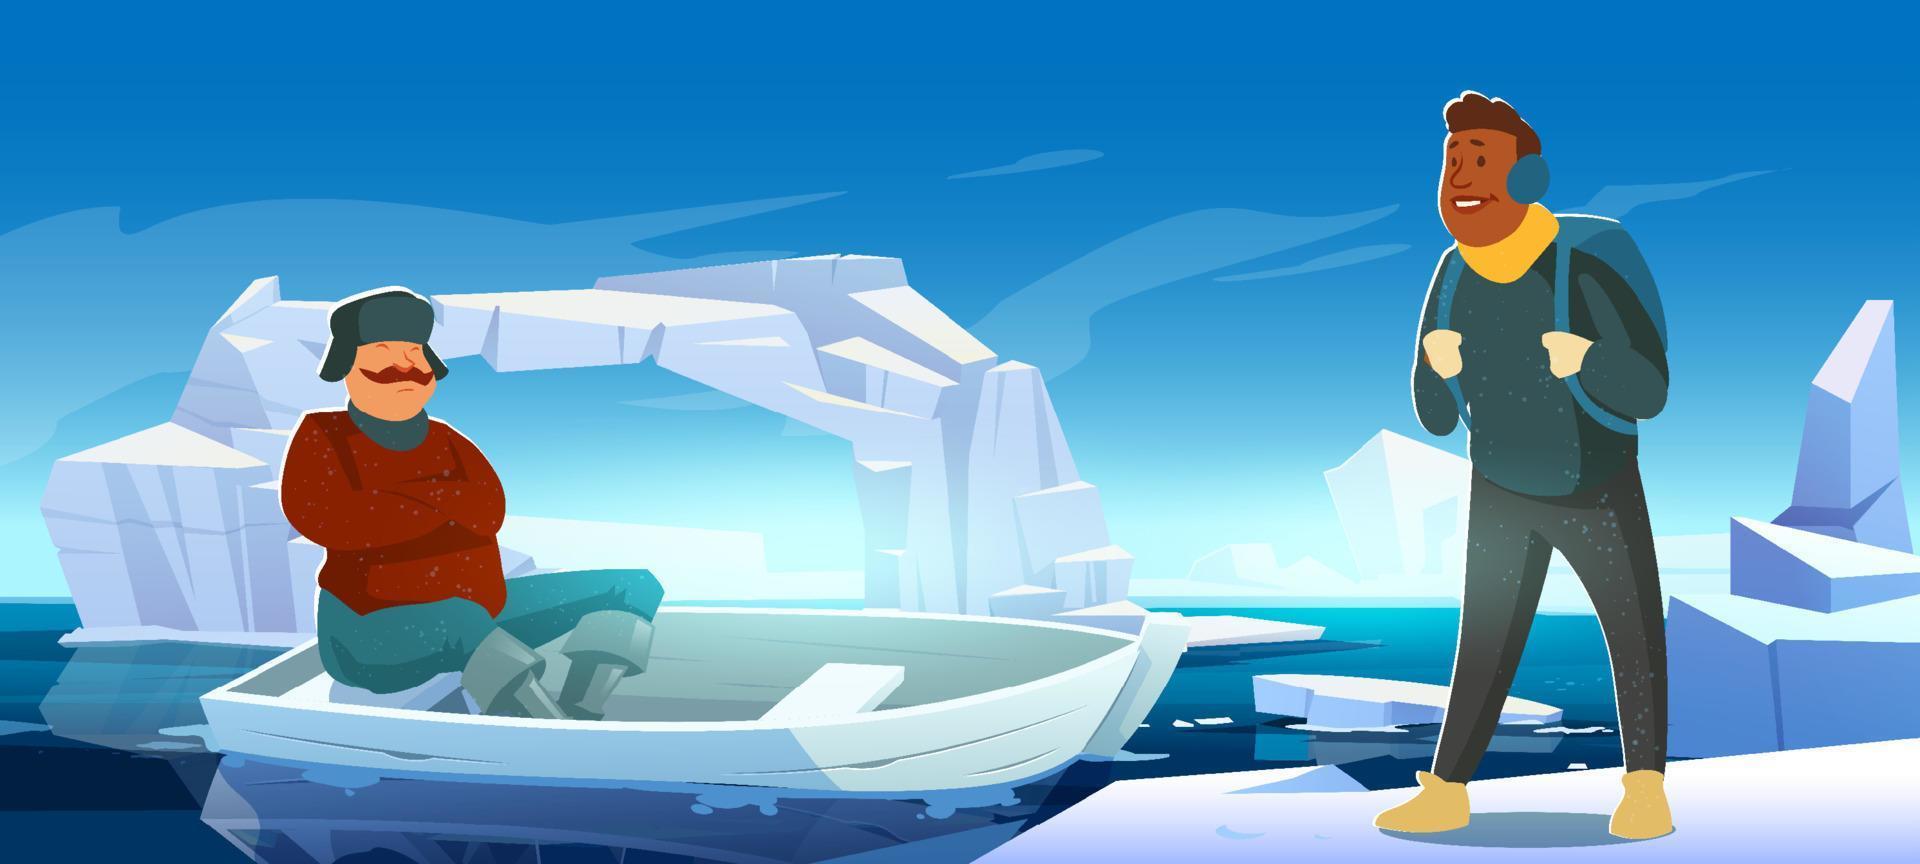 artico paesaggio con iceberg, barca e persone vettore